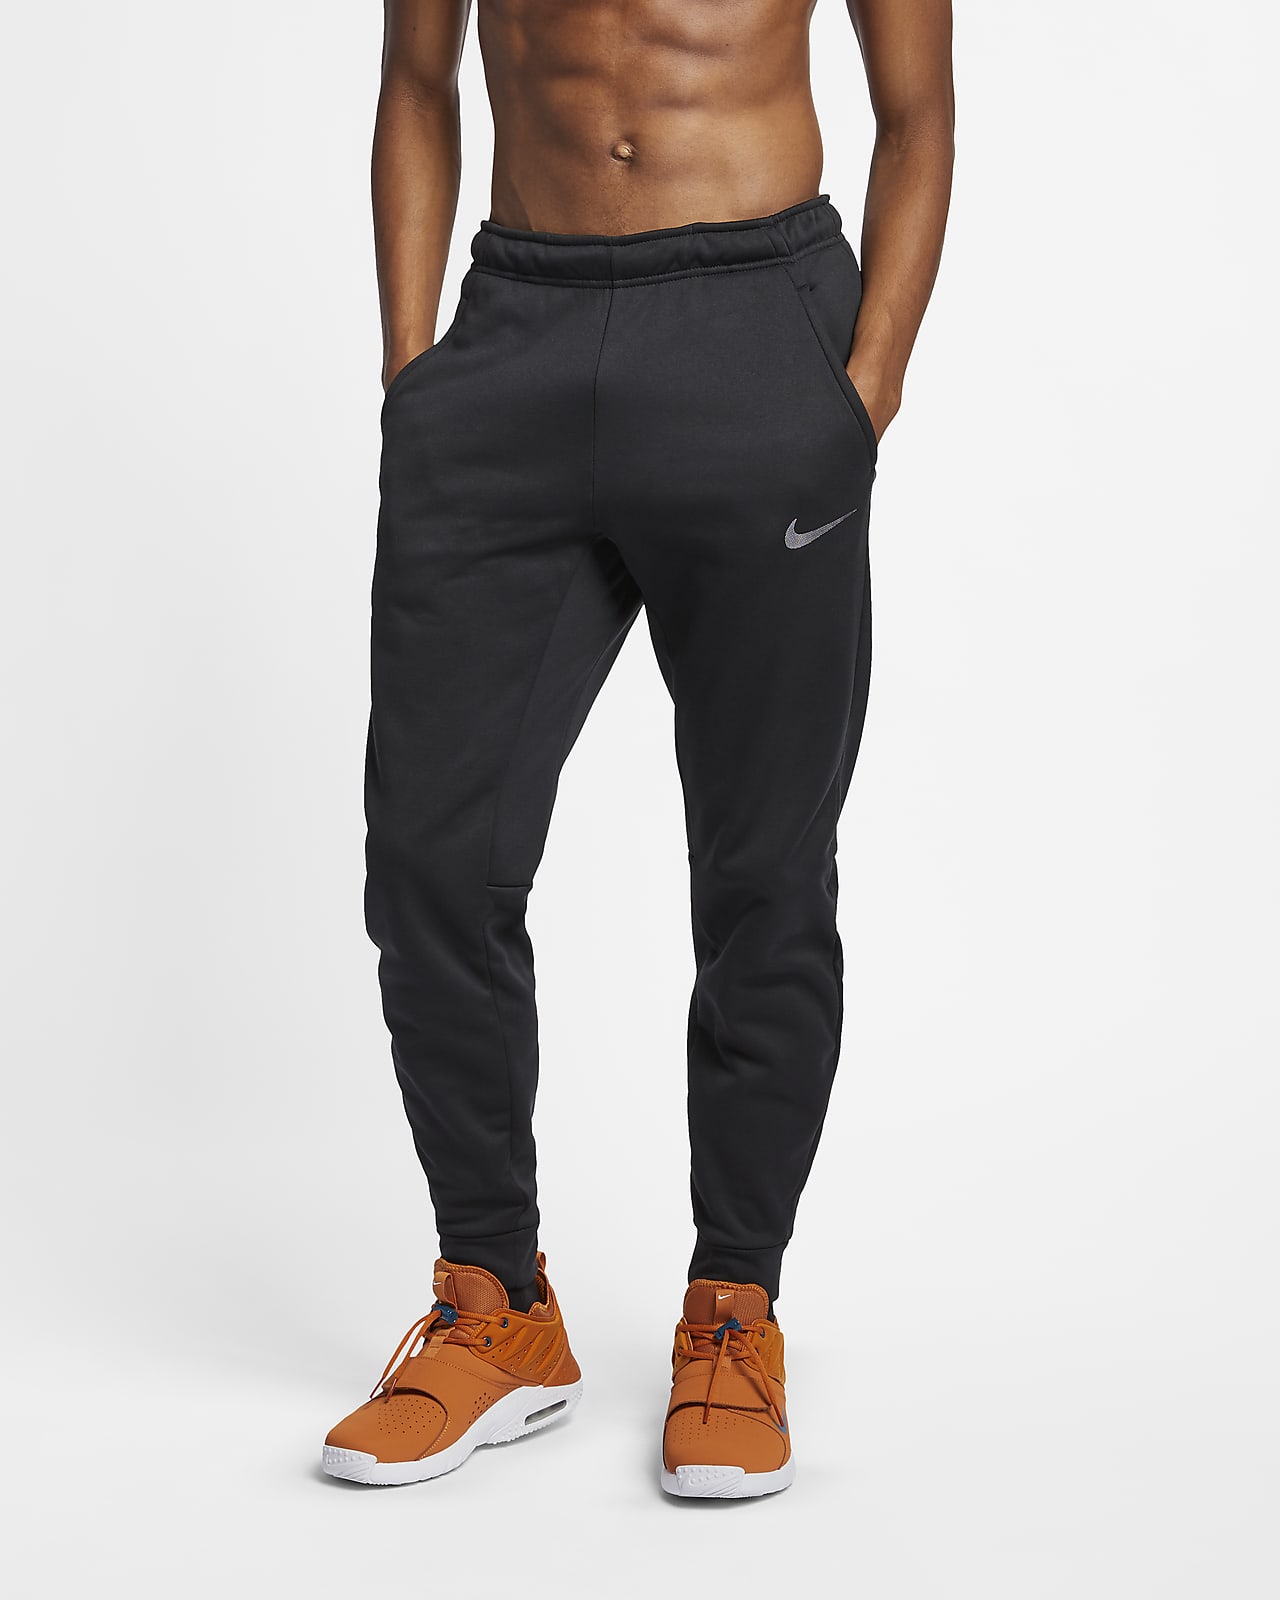 Мужские брюки с зауженным книзу кроем для тренинга Nike Therma-FIT